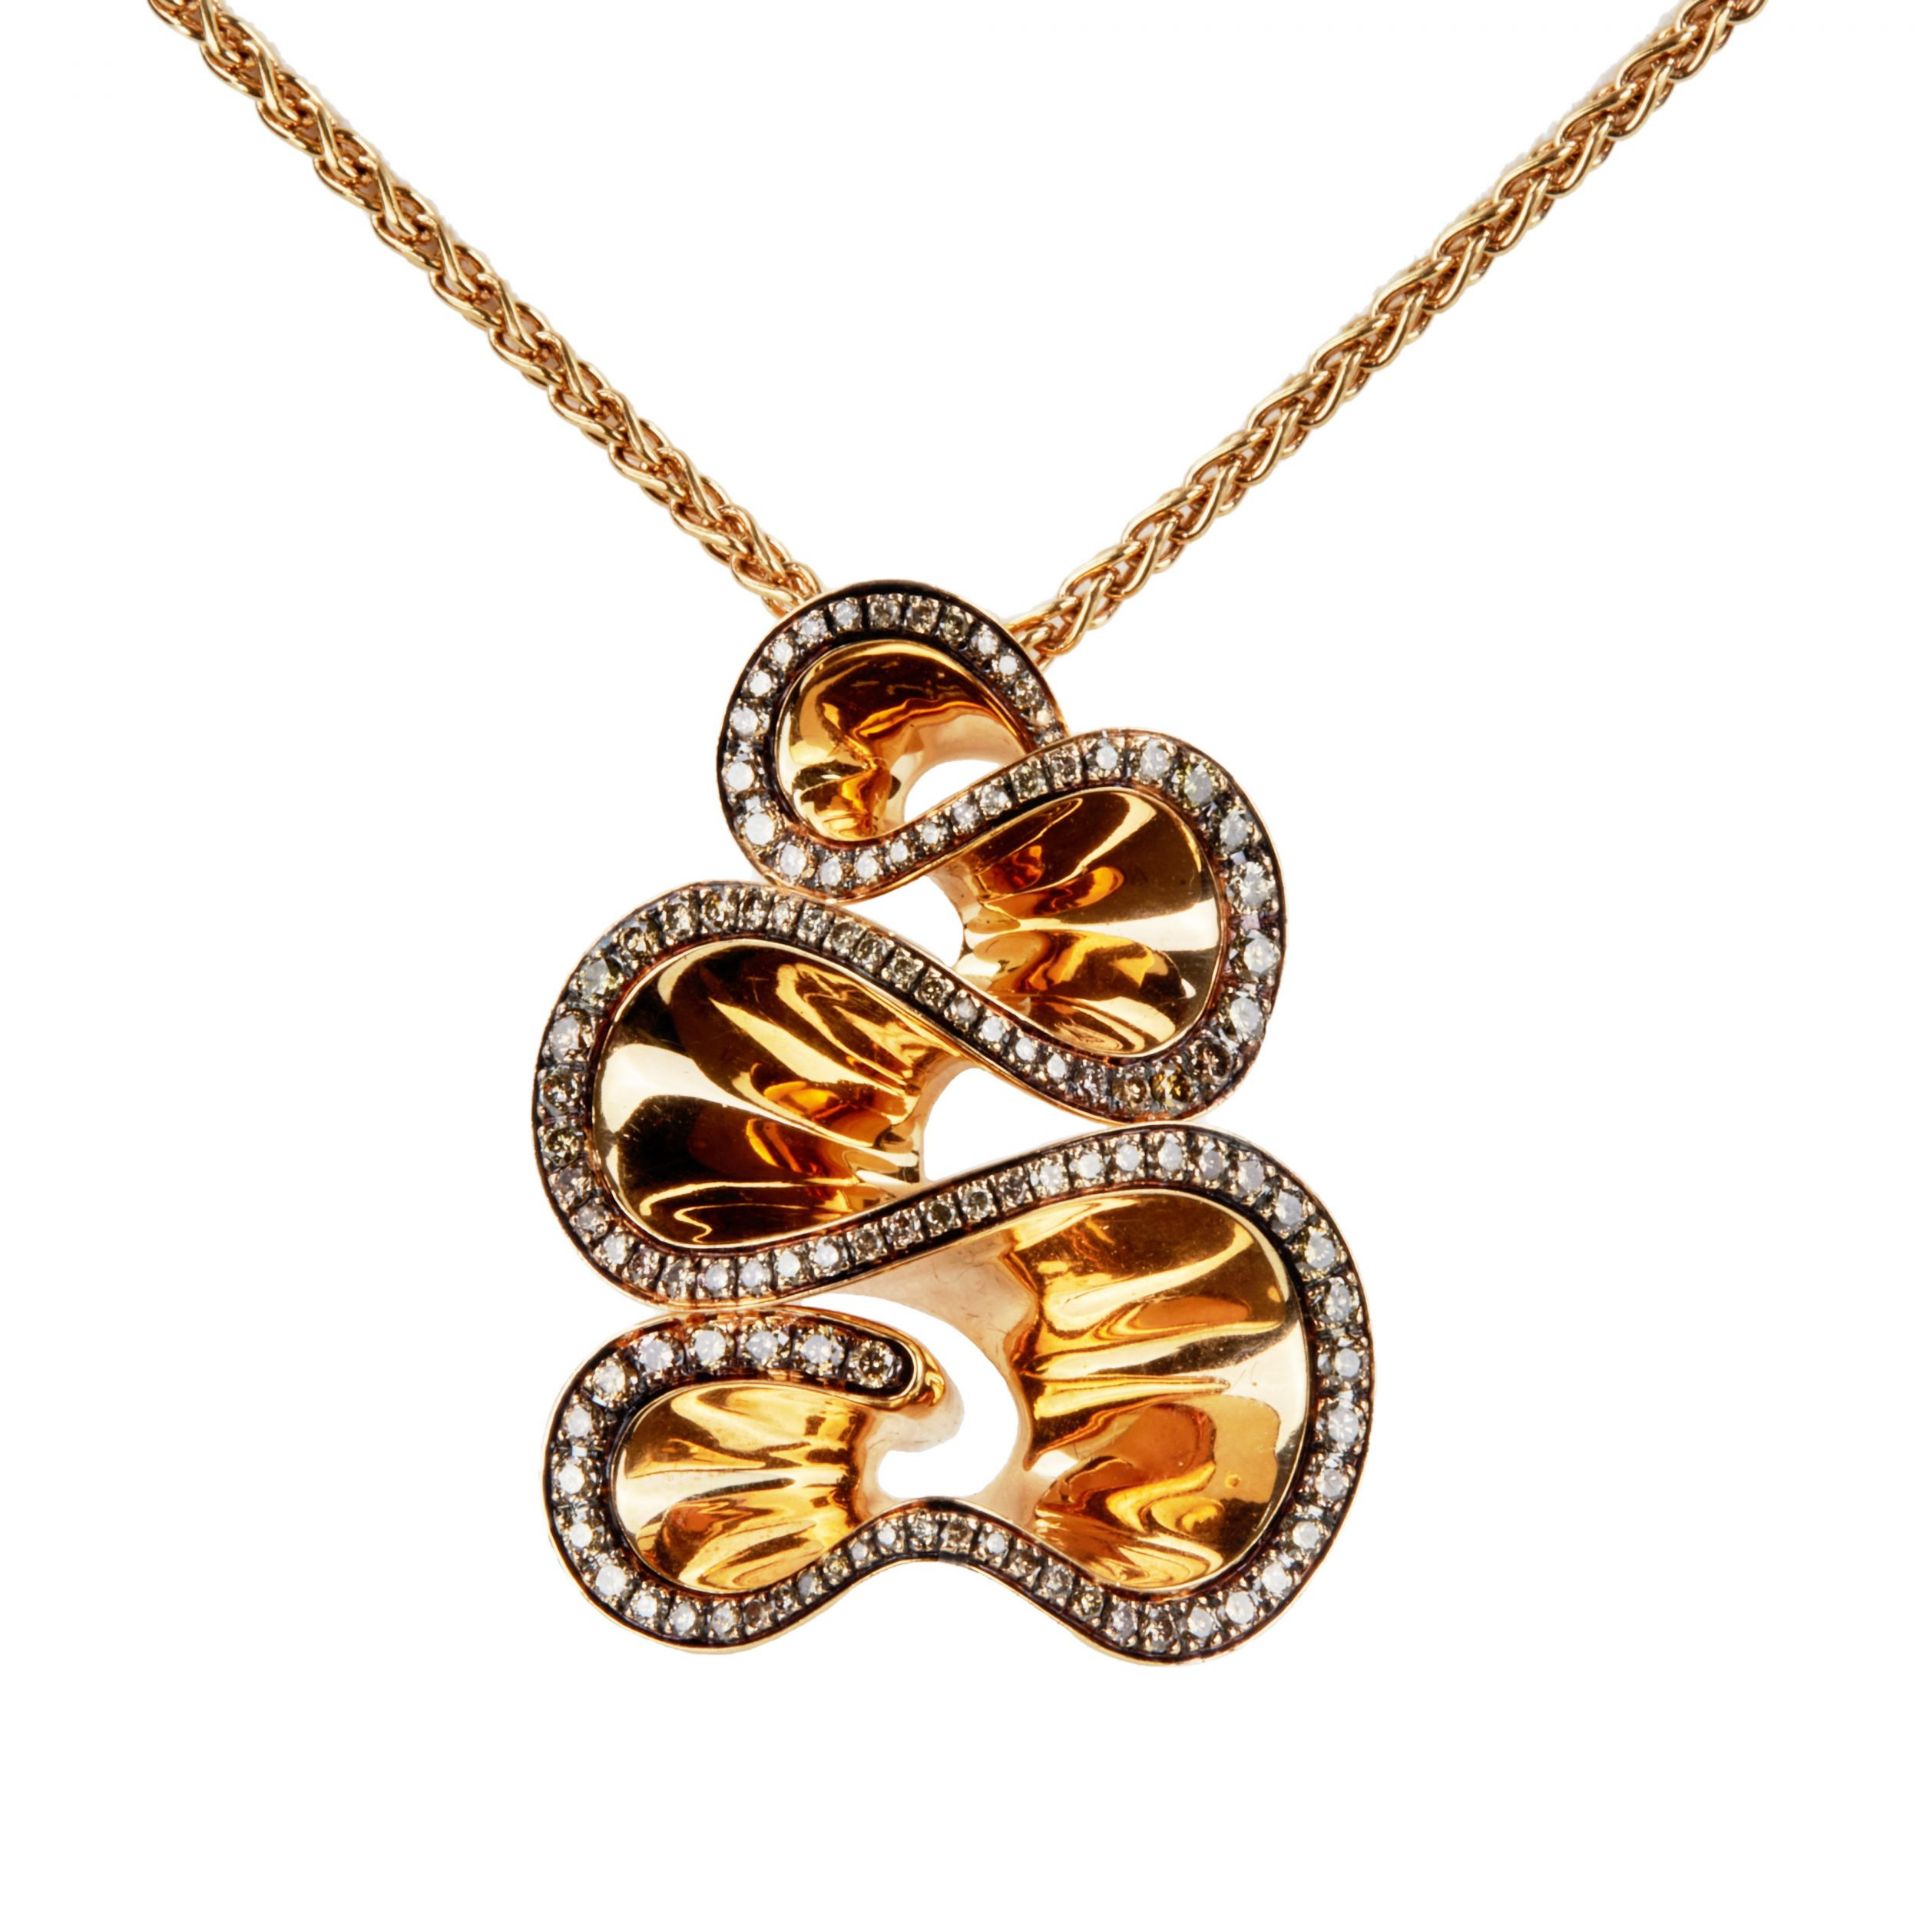 Grisogono Zigana gold necklace with diamonds. - Image 2 of 8